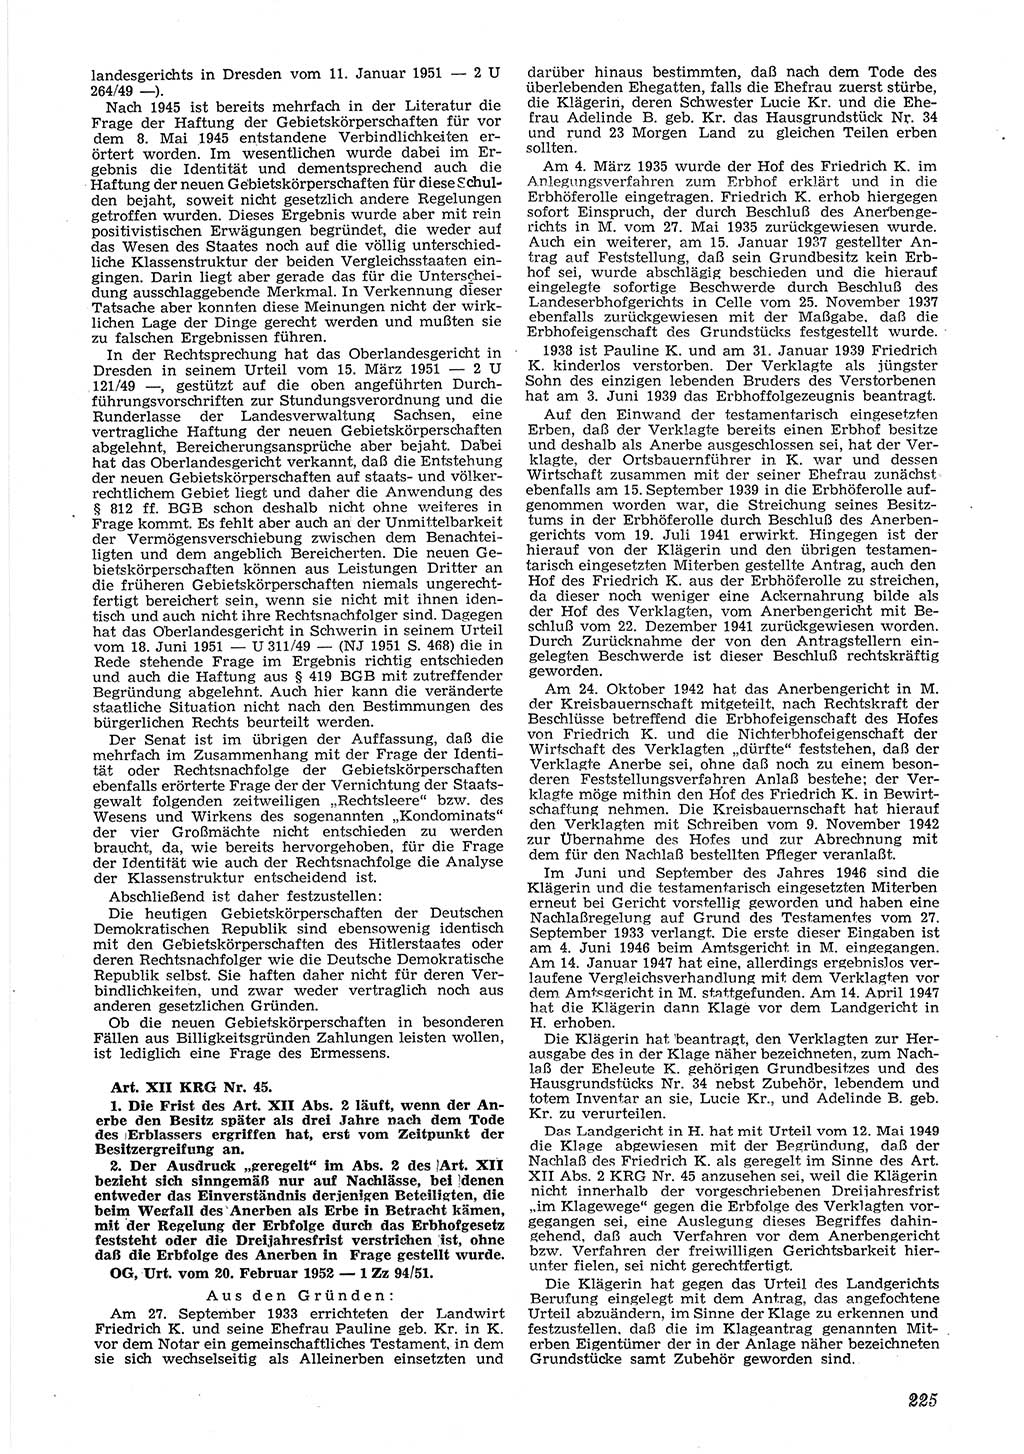 Neue Justiz (NJ), Zeitschrift für Recht und Rechtswissenschaft [Deutsche Demokratische Republik (DDR)], 6. Jahrgang 1952, Seite 225 (NJ DDR 1952, S. 225)